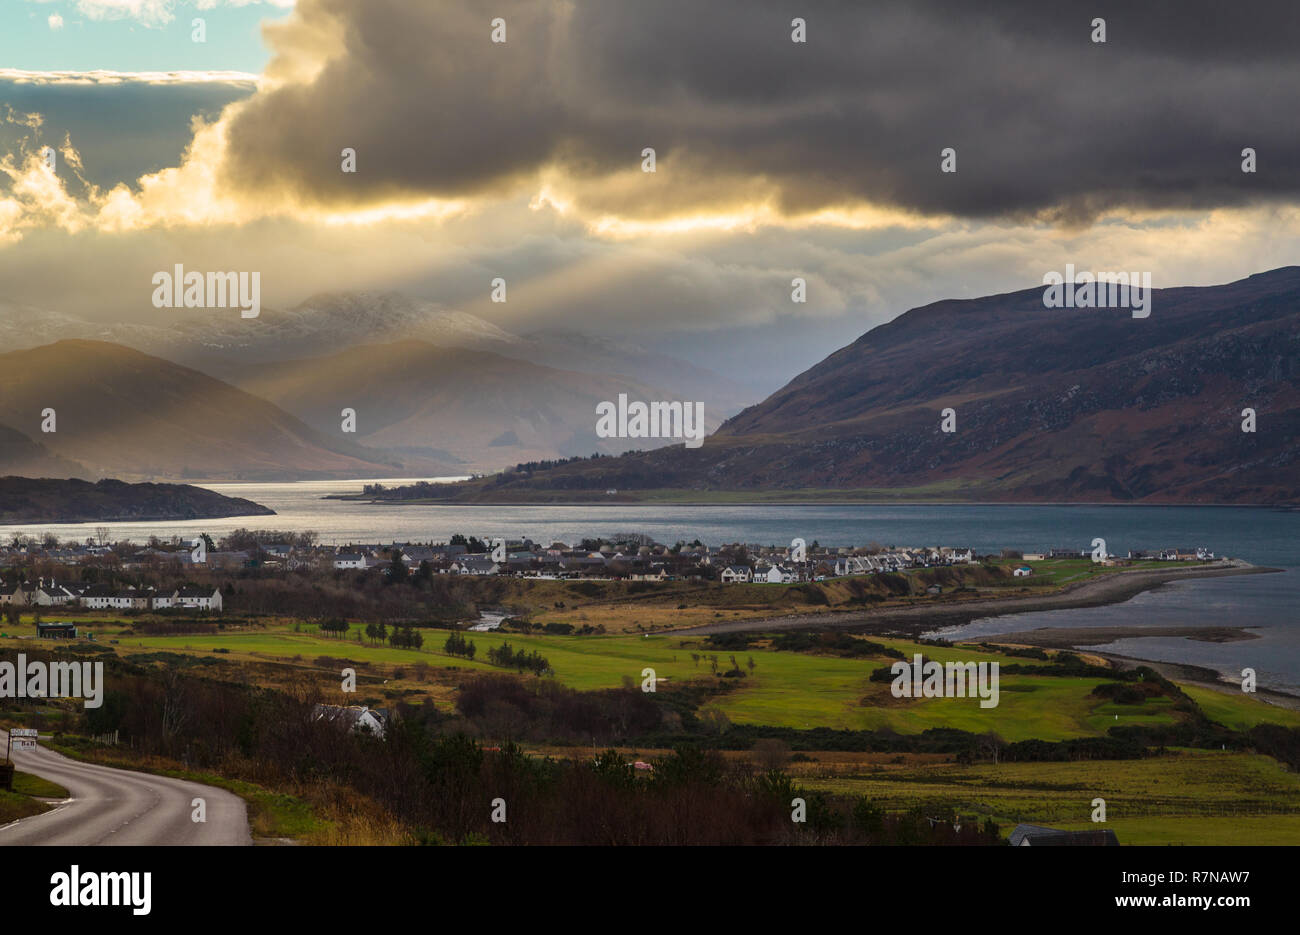 Ejes de la luz solar a través de las nubes en el extremo este de Loch, NW Highlands de Escocia. Vista desde la carretera A835 por encima de Ullapool. Foto de stock